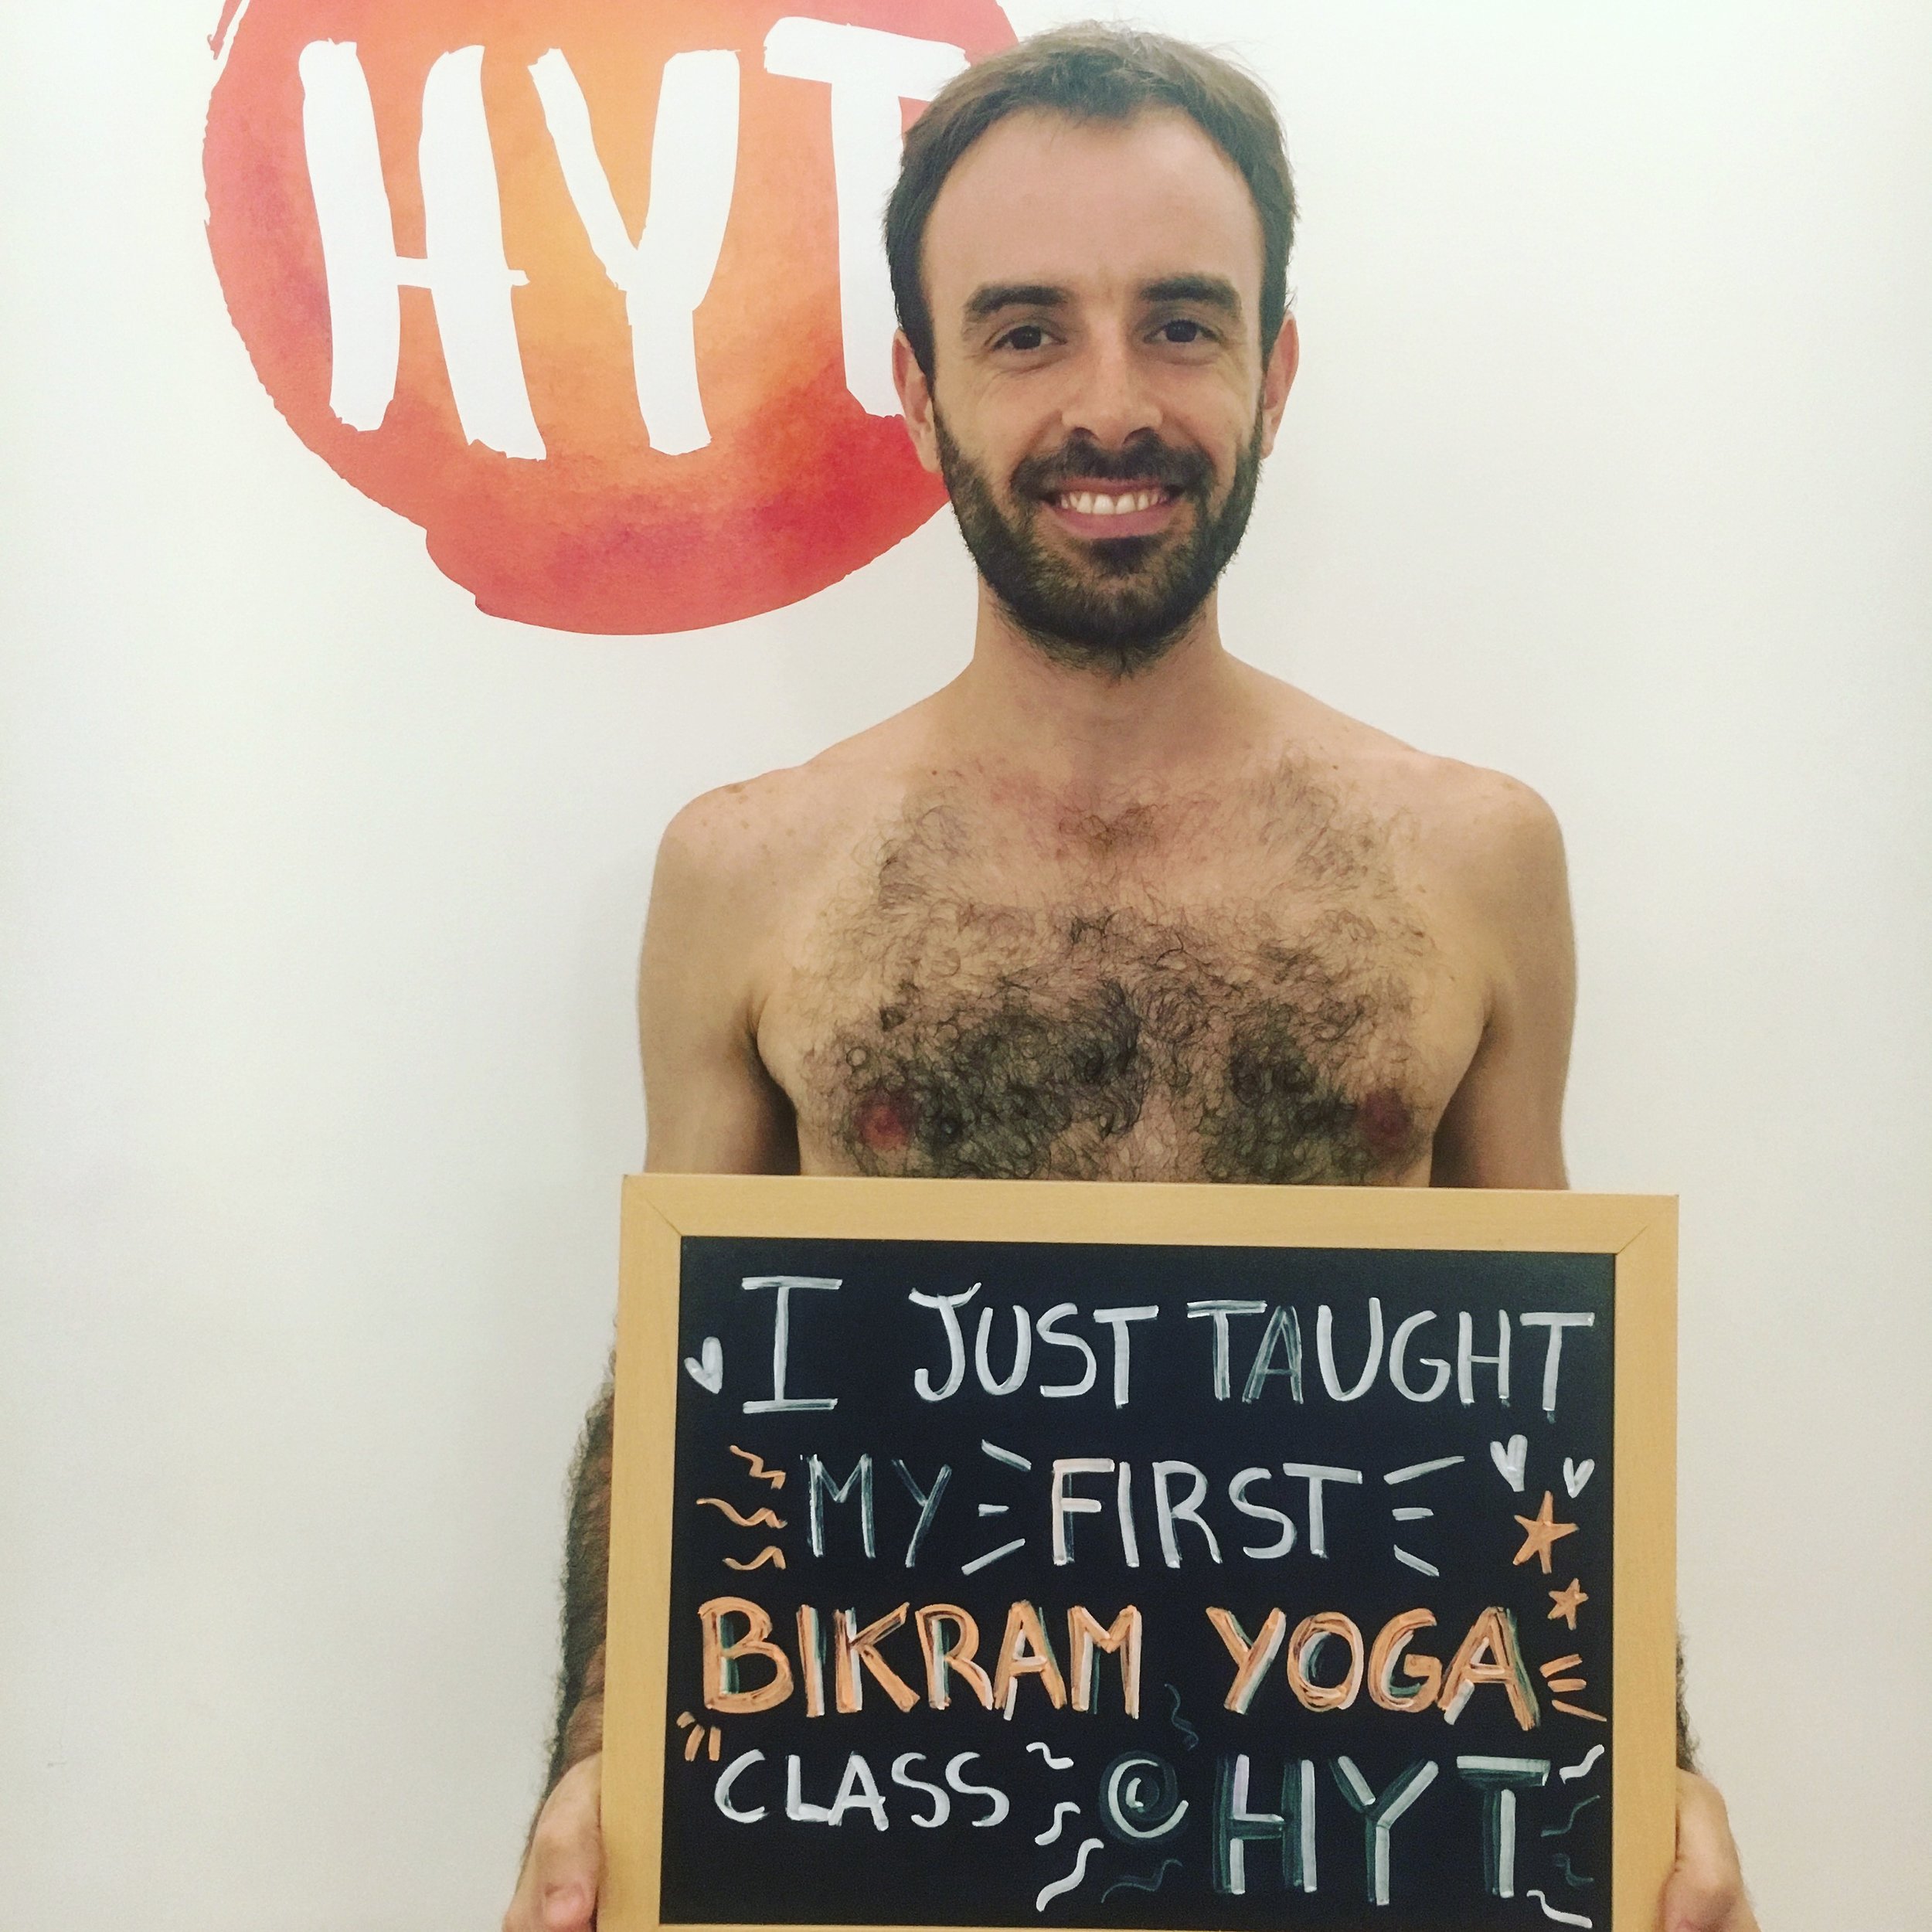 First class at HYT new teacher